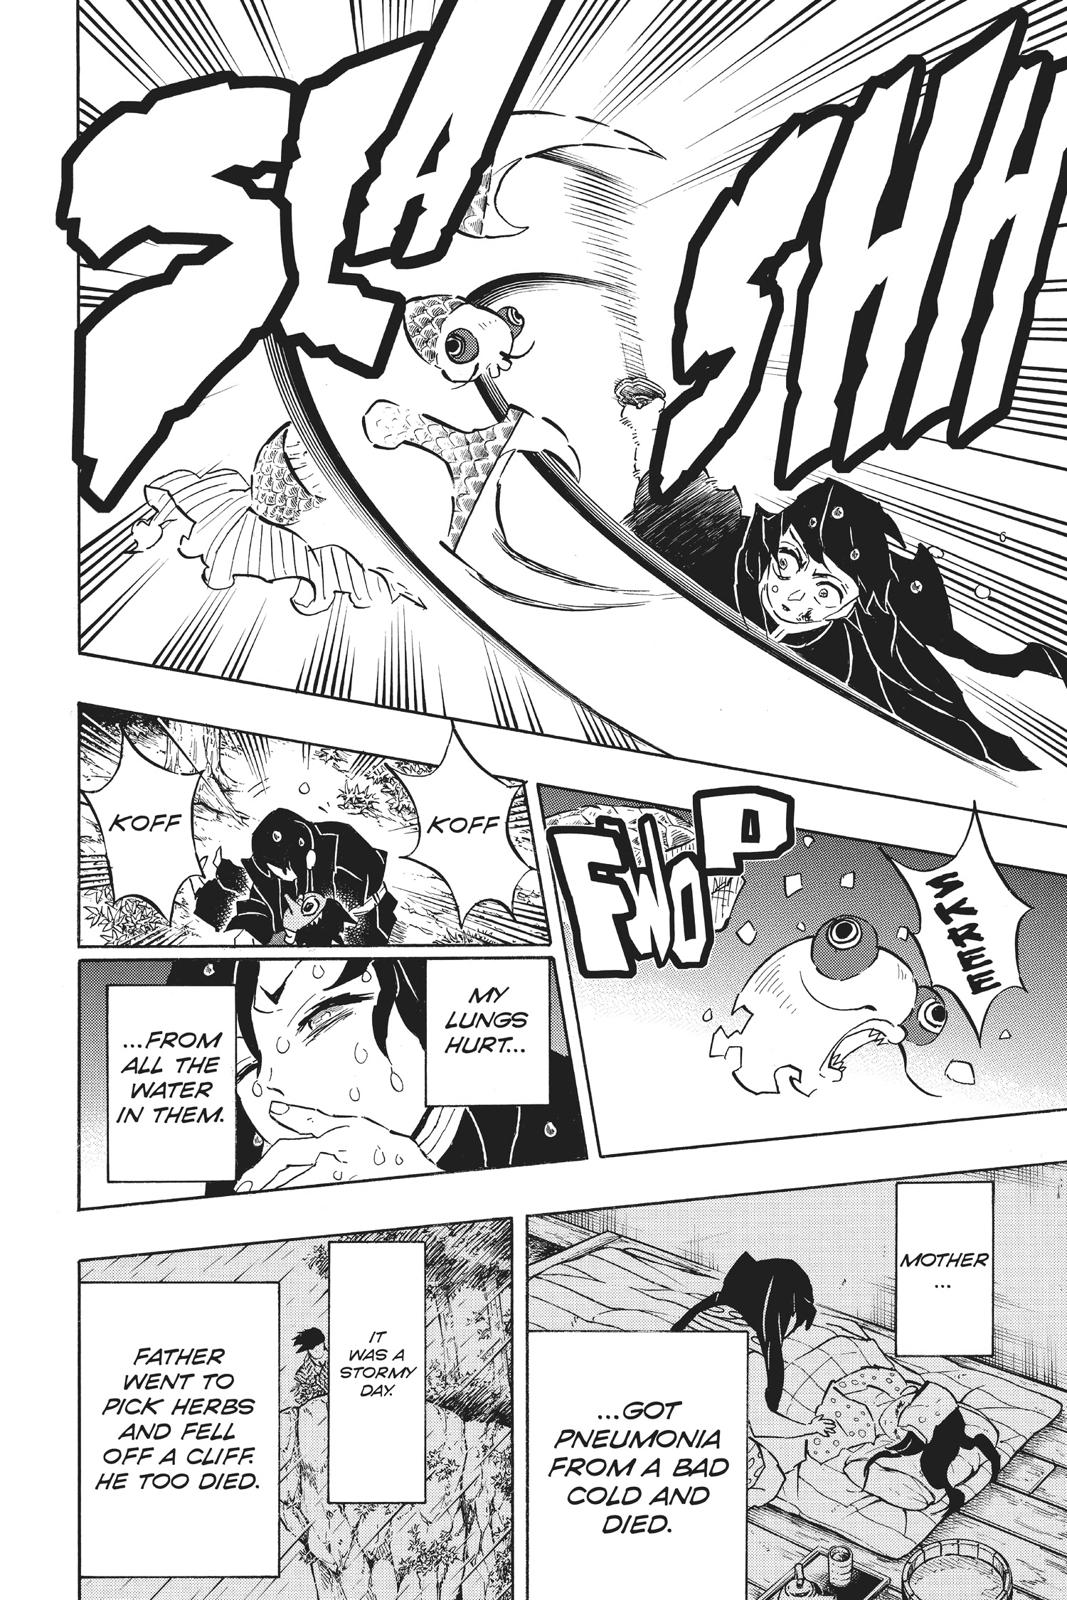 Demon Slayer Manga Manga Chapter - 118 - image 4